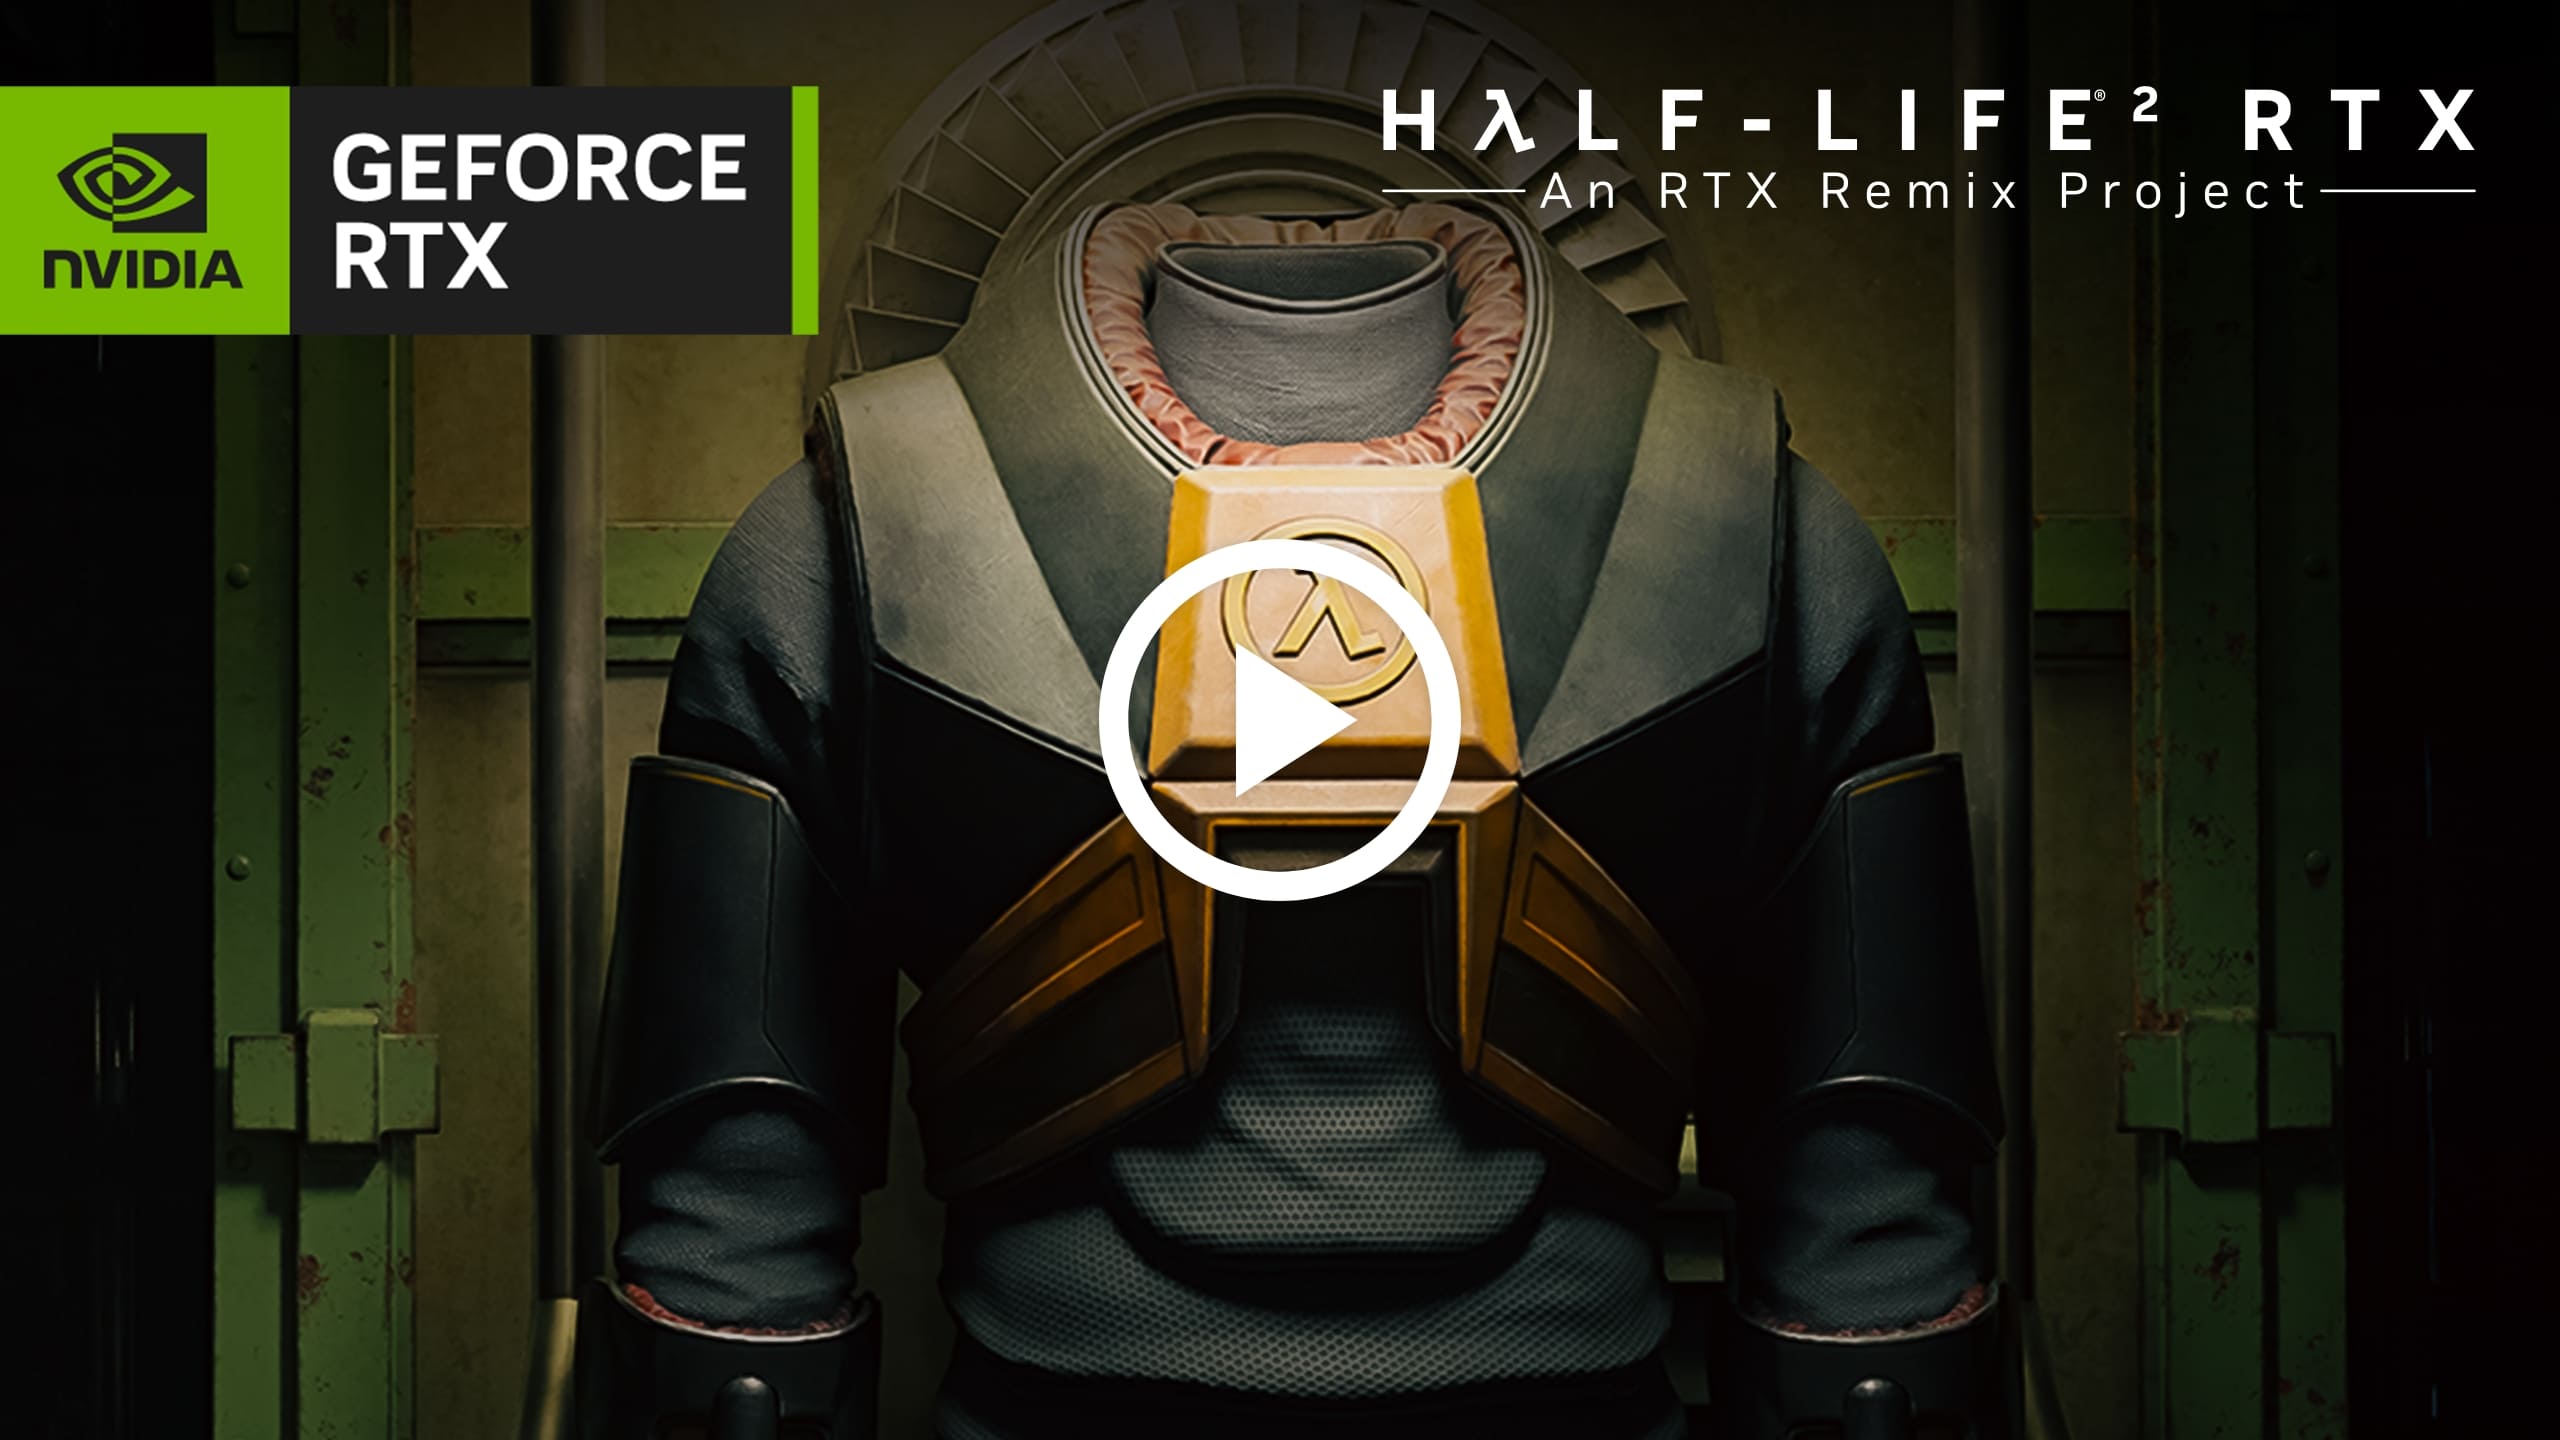 Half-Life 2 RTX : un projet RTX Remix